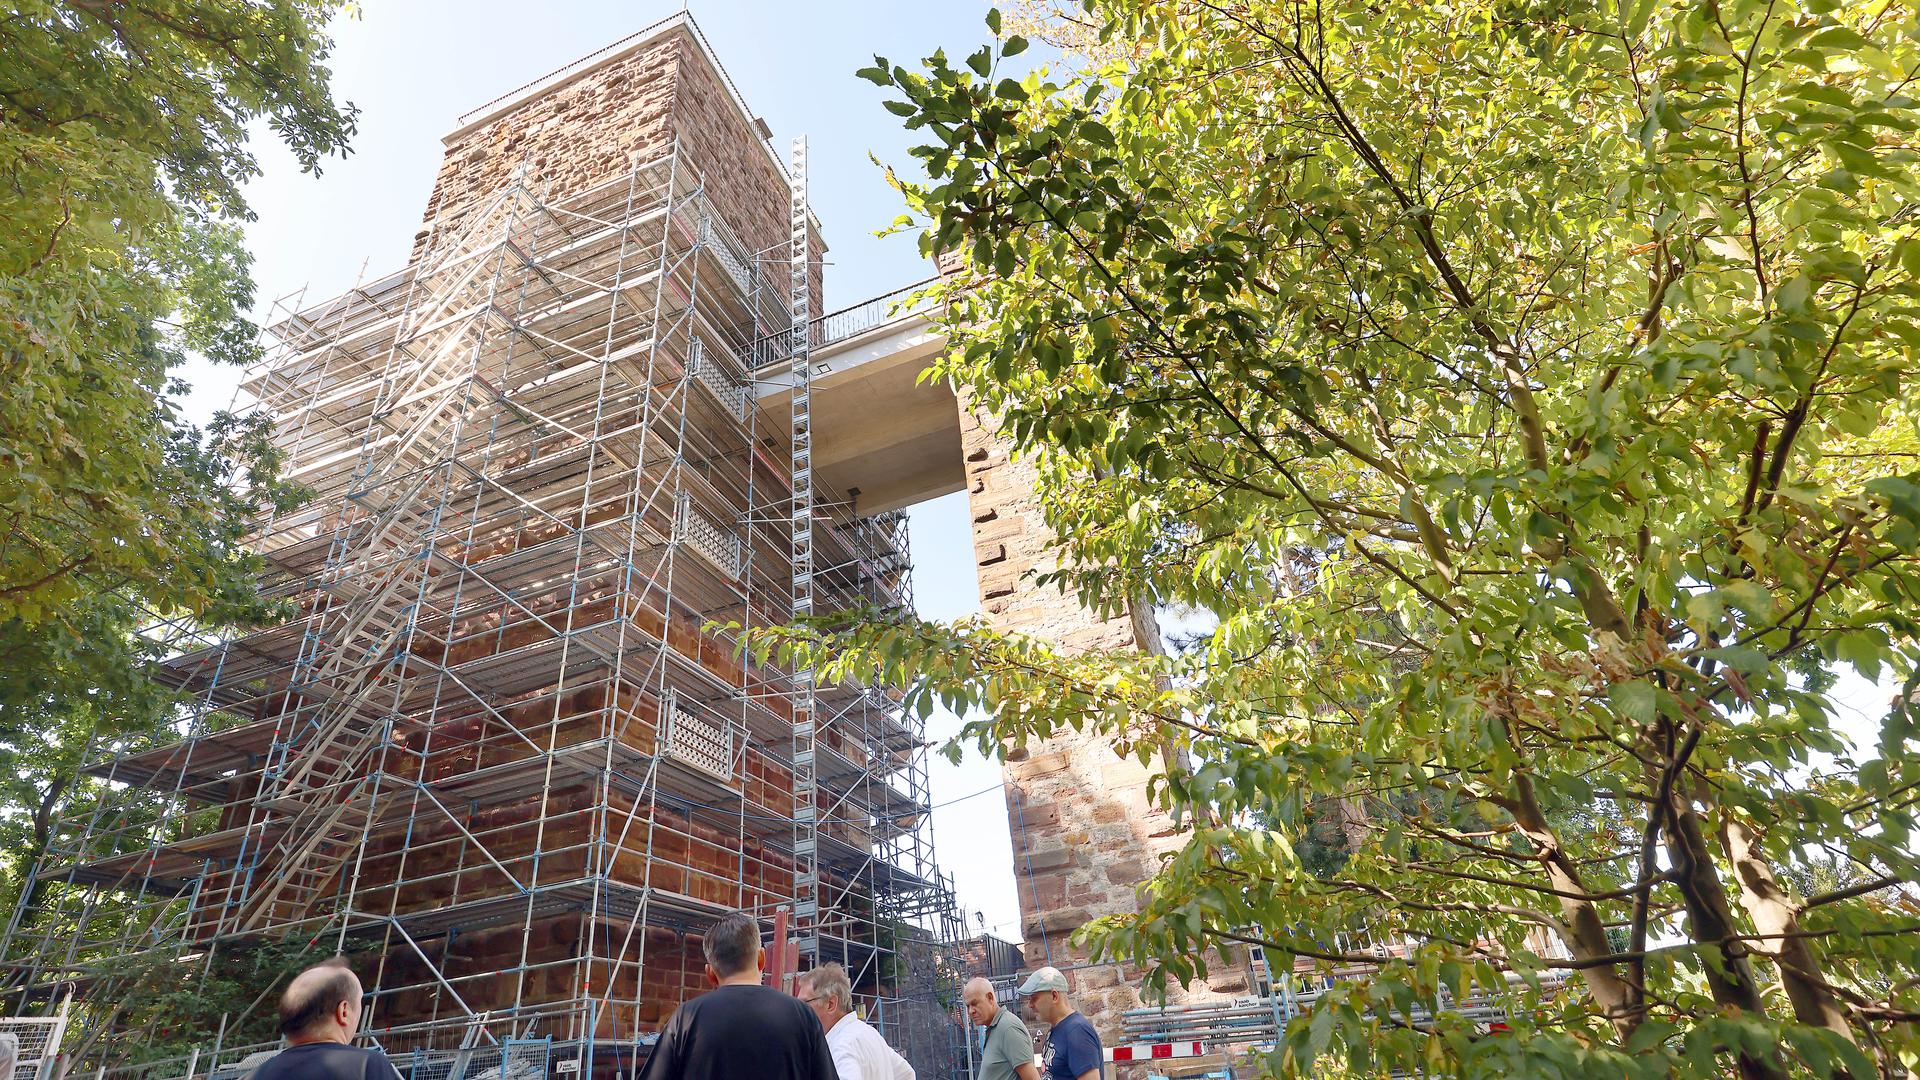 Am 25.07.2022 sind am Turmberg  zur Vorbereitung der einjährigen Fassadensanierung am Bergfried die Arbeiten am Gerüst fast abgeschlossen.